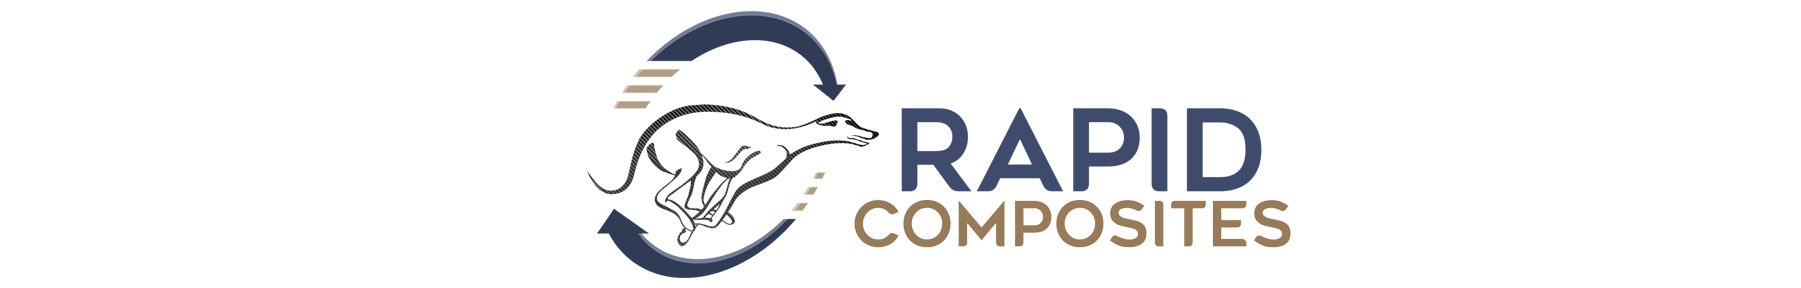 Rapid Composites